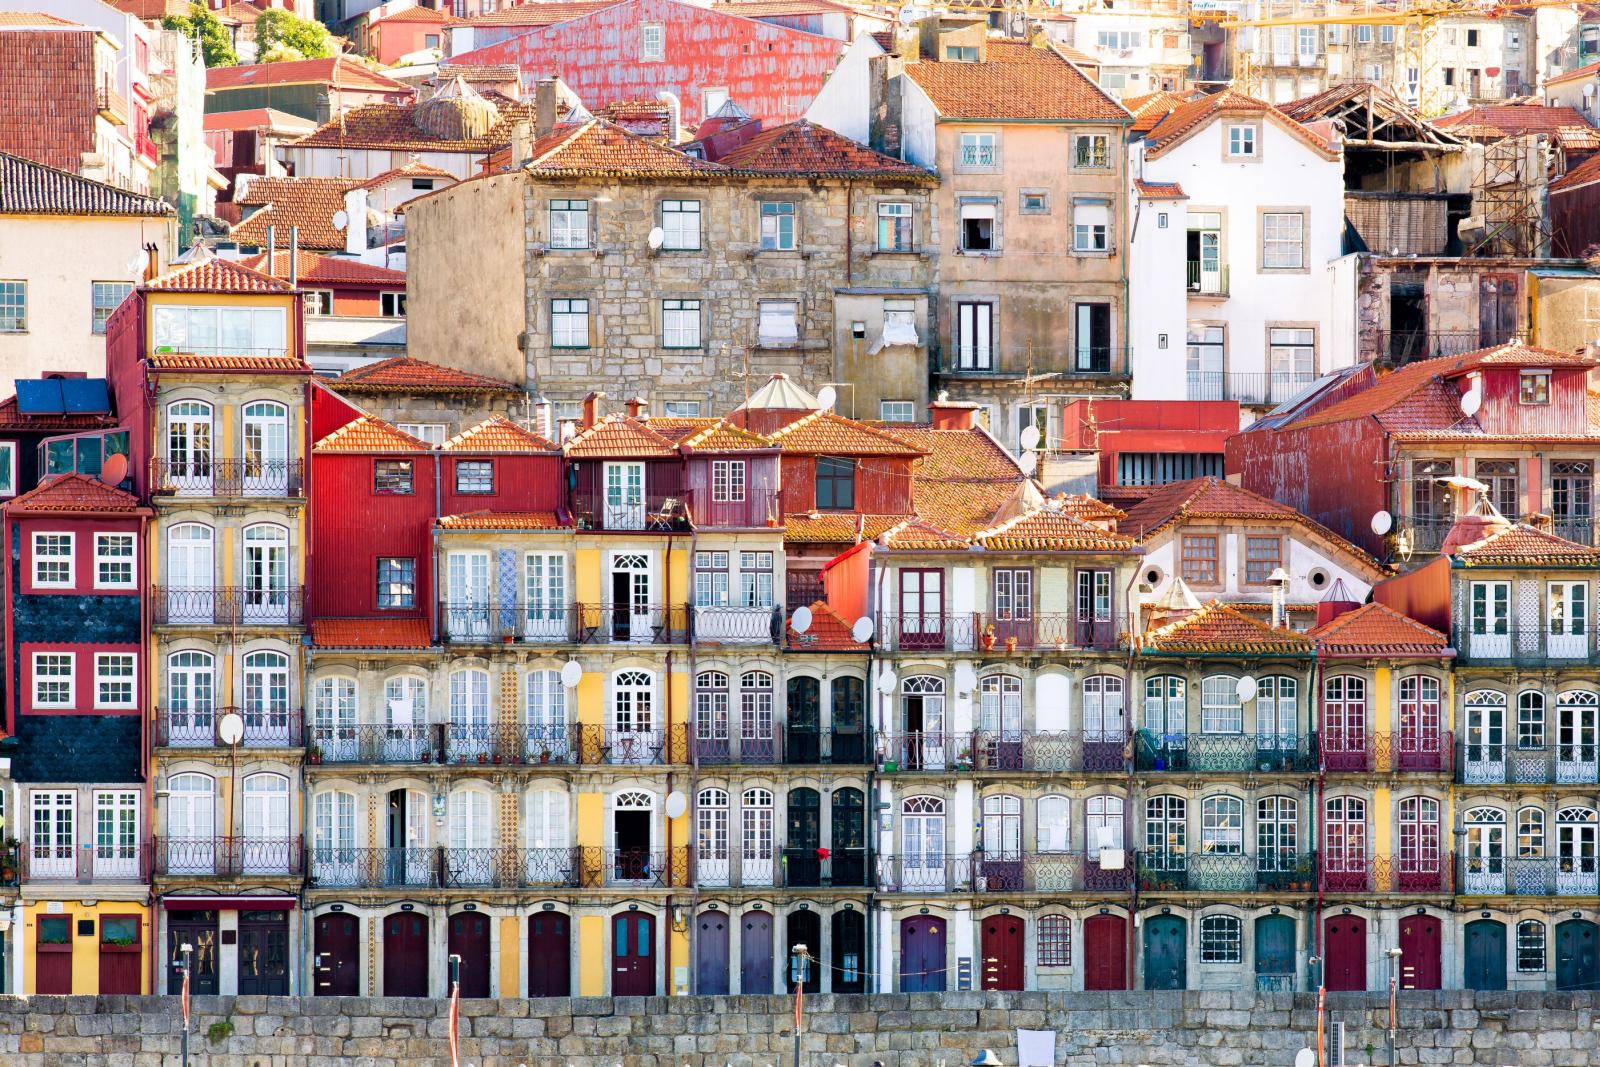 Ribeira district in Porto, Portugal